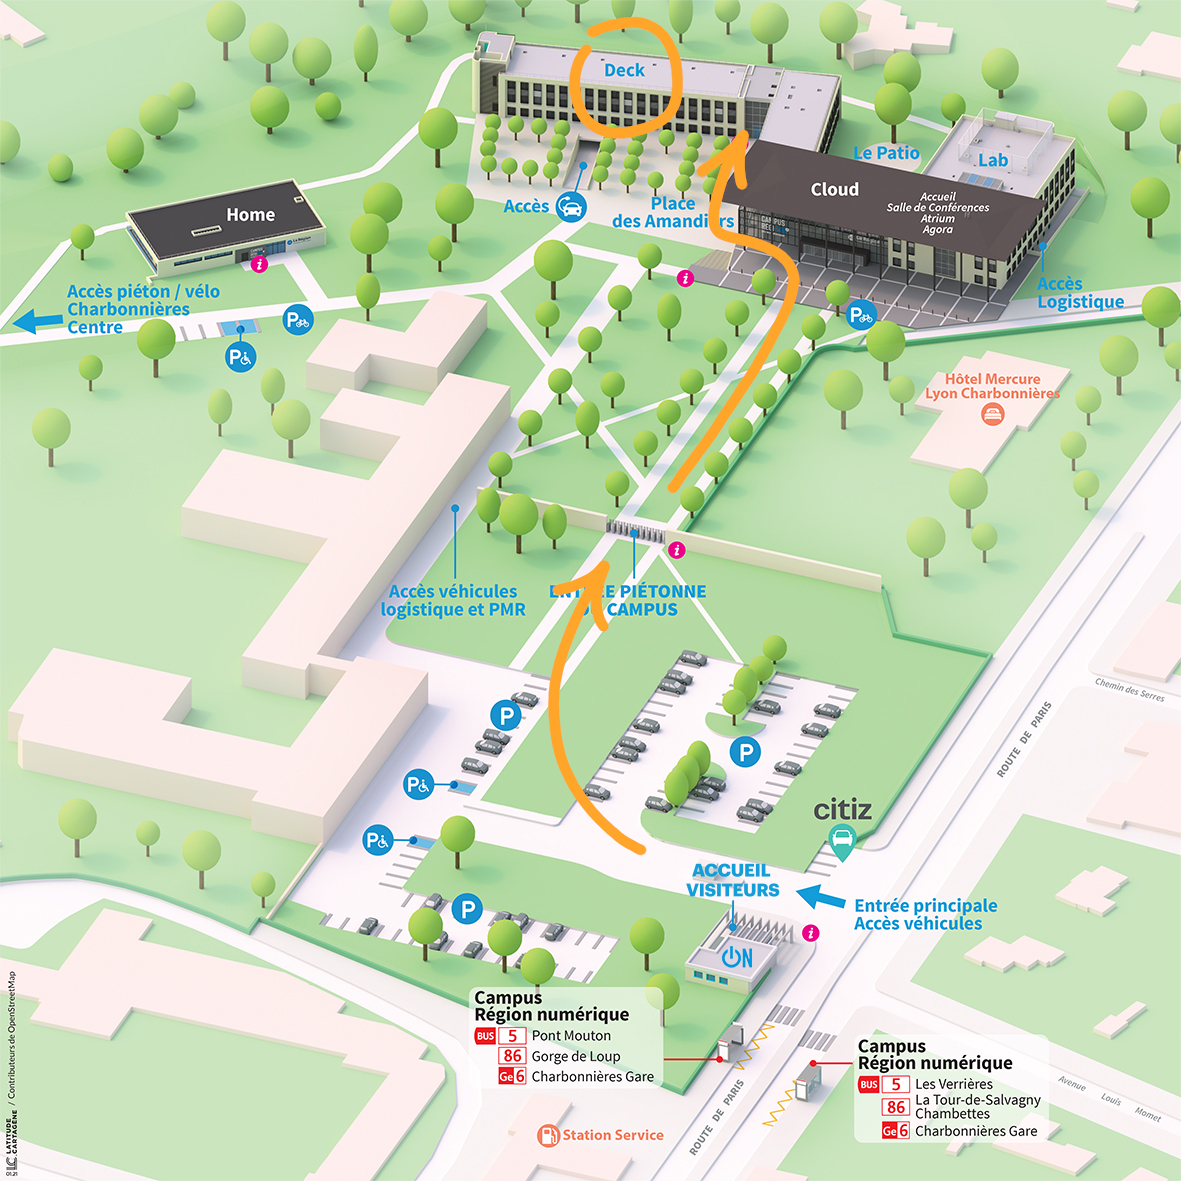 Annonated map of Campus numérique